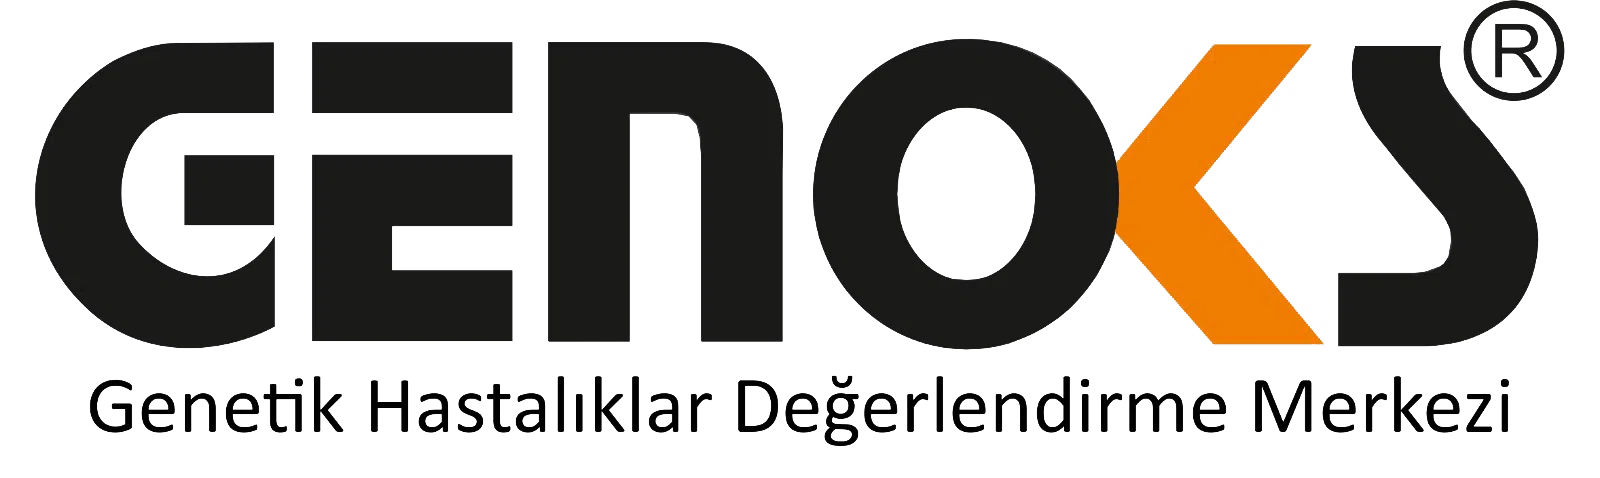 genoks-logo